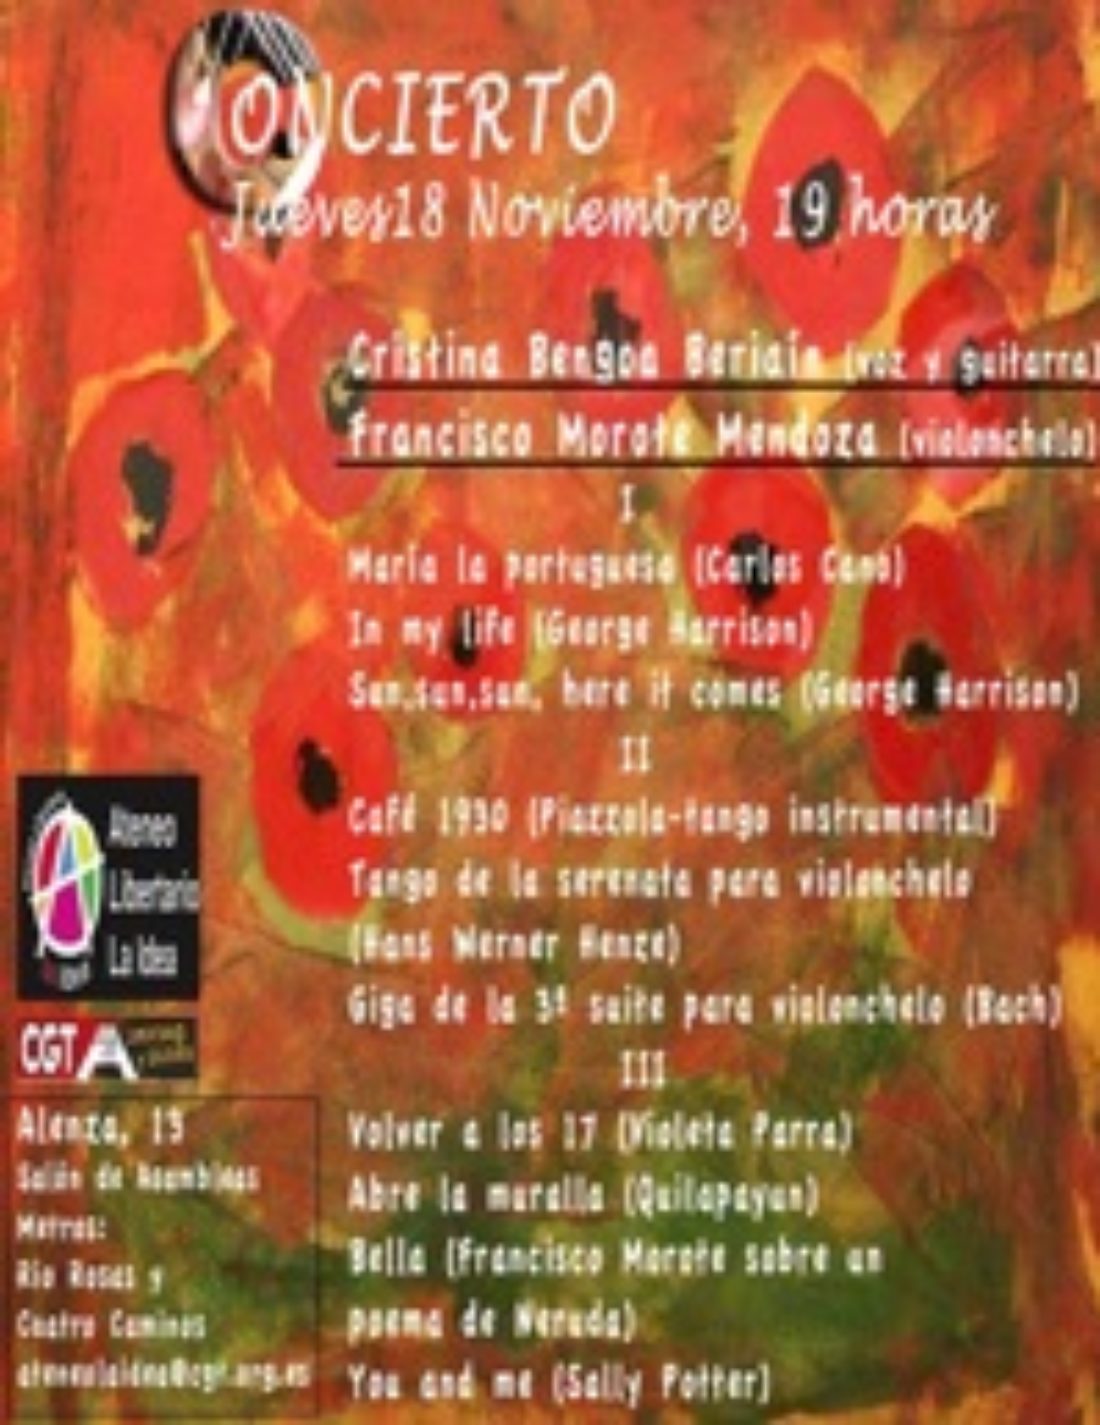 18 nov, AL La Idea-Madrid : Concierto de Cristina Bengoa y Francisco Morote